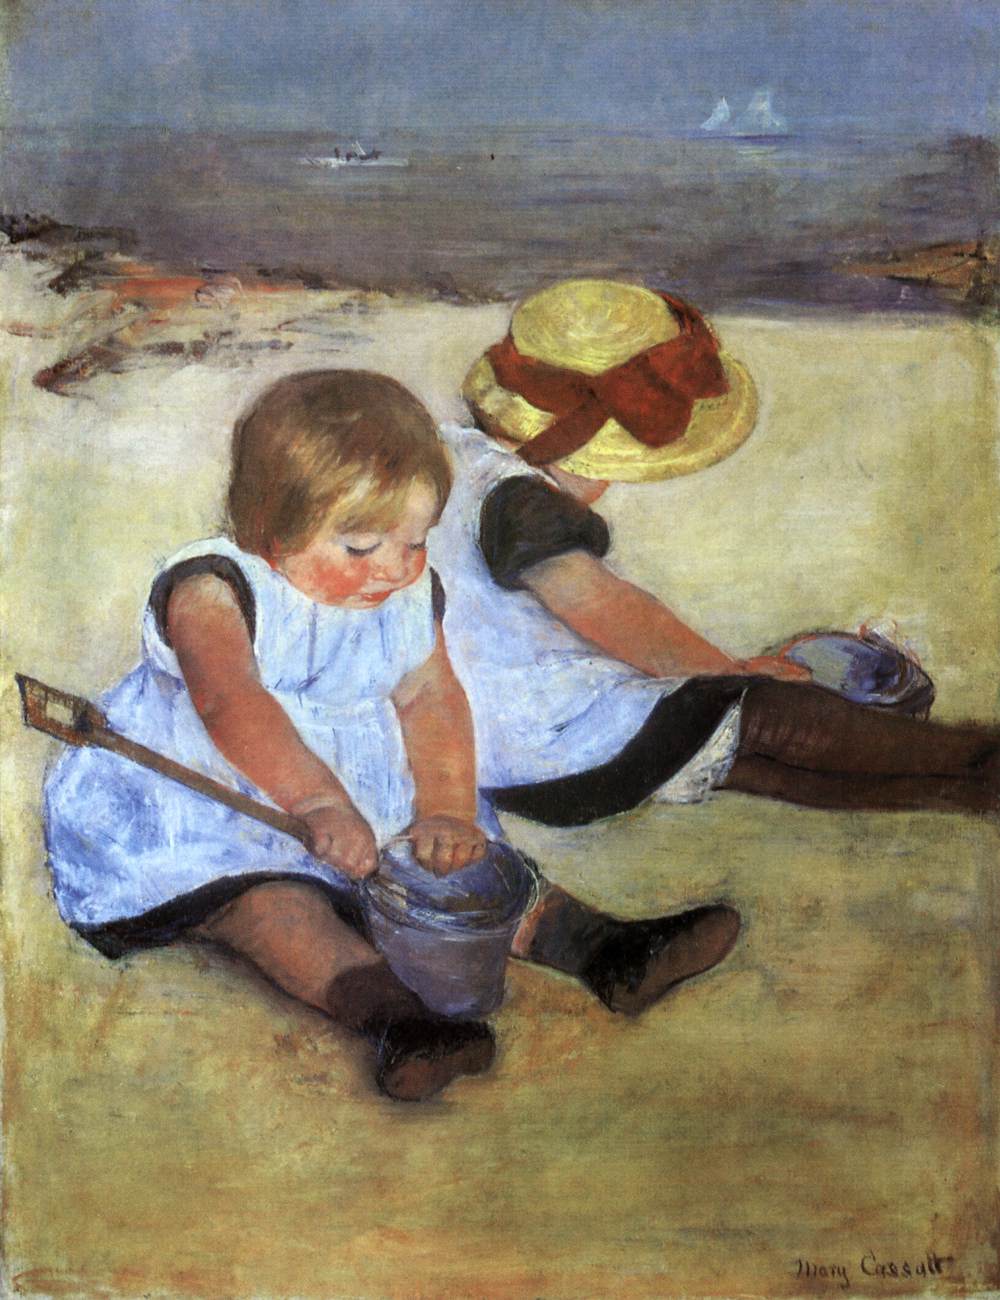 Dzieci na plaży